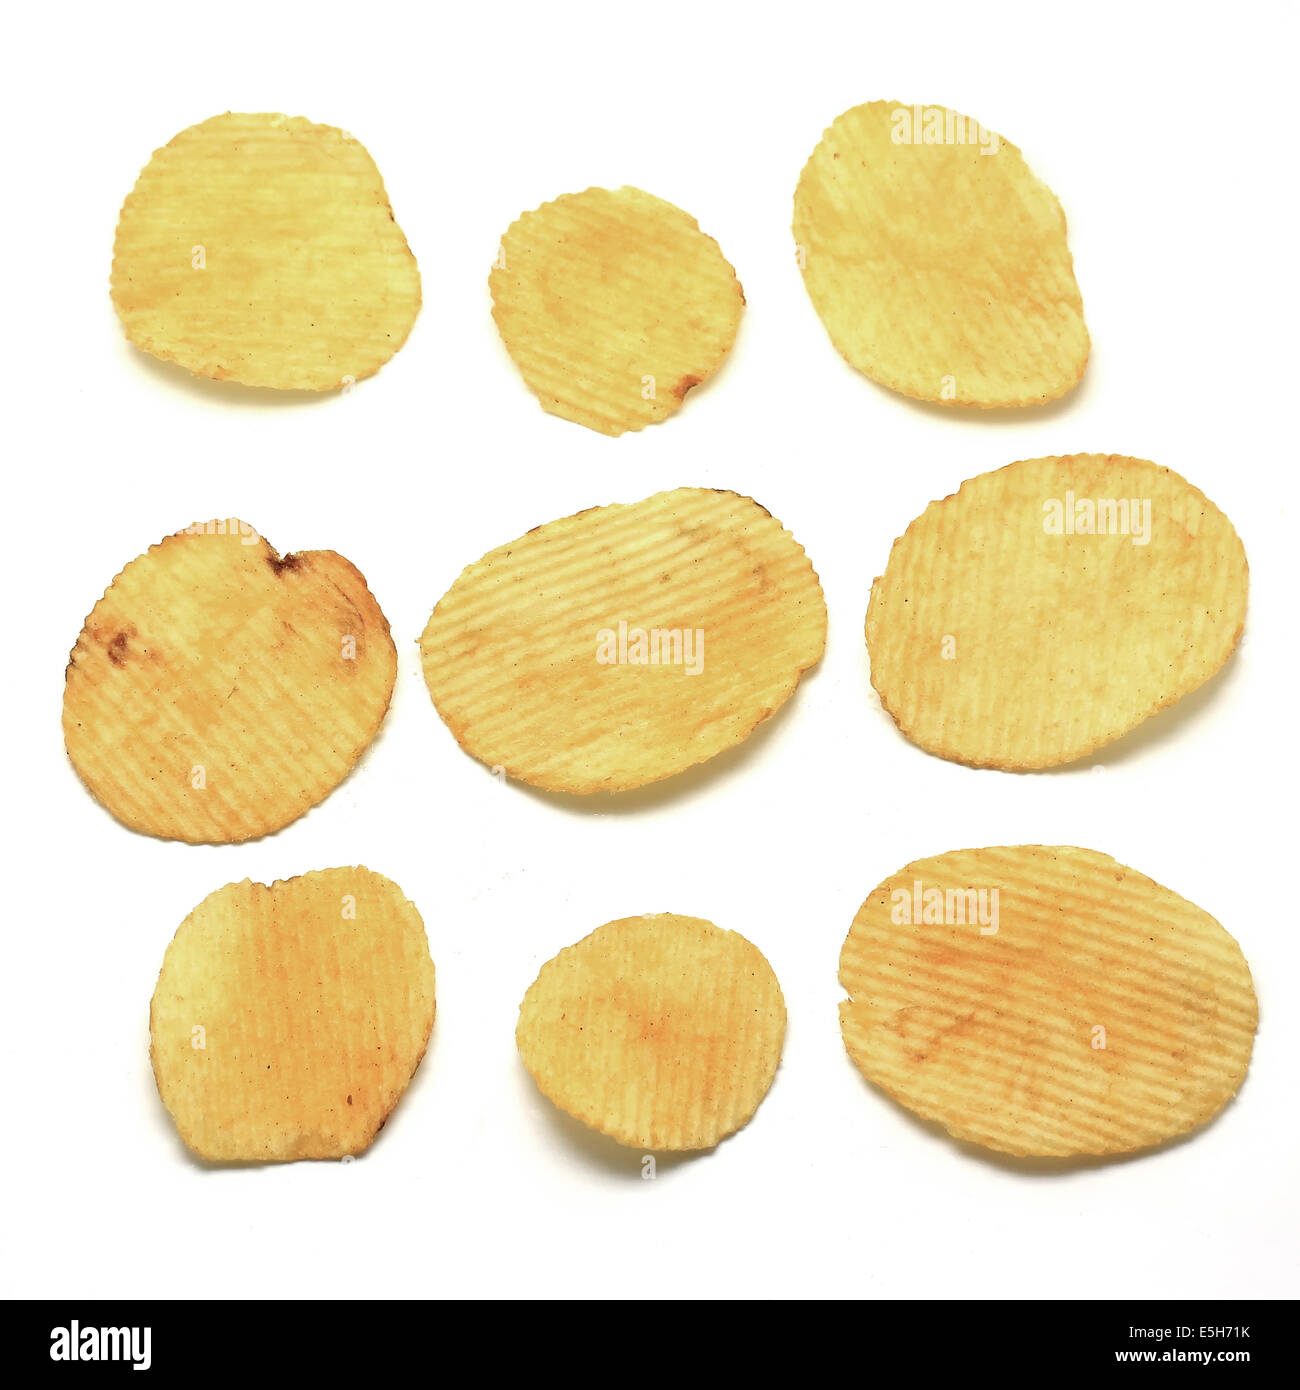 potato crisps isolated on white background Stock Photo